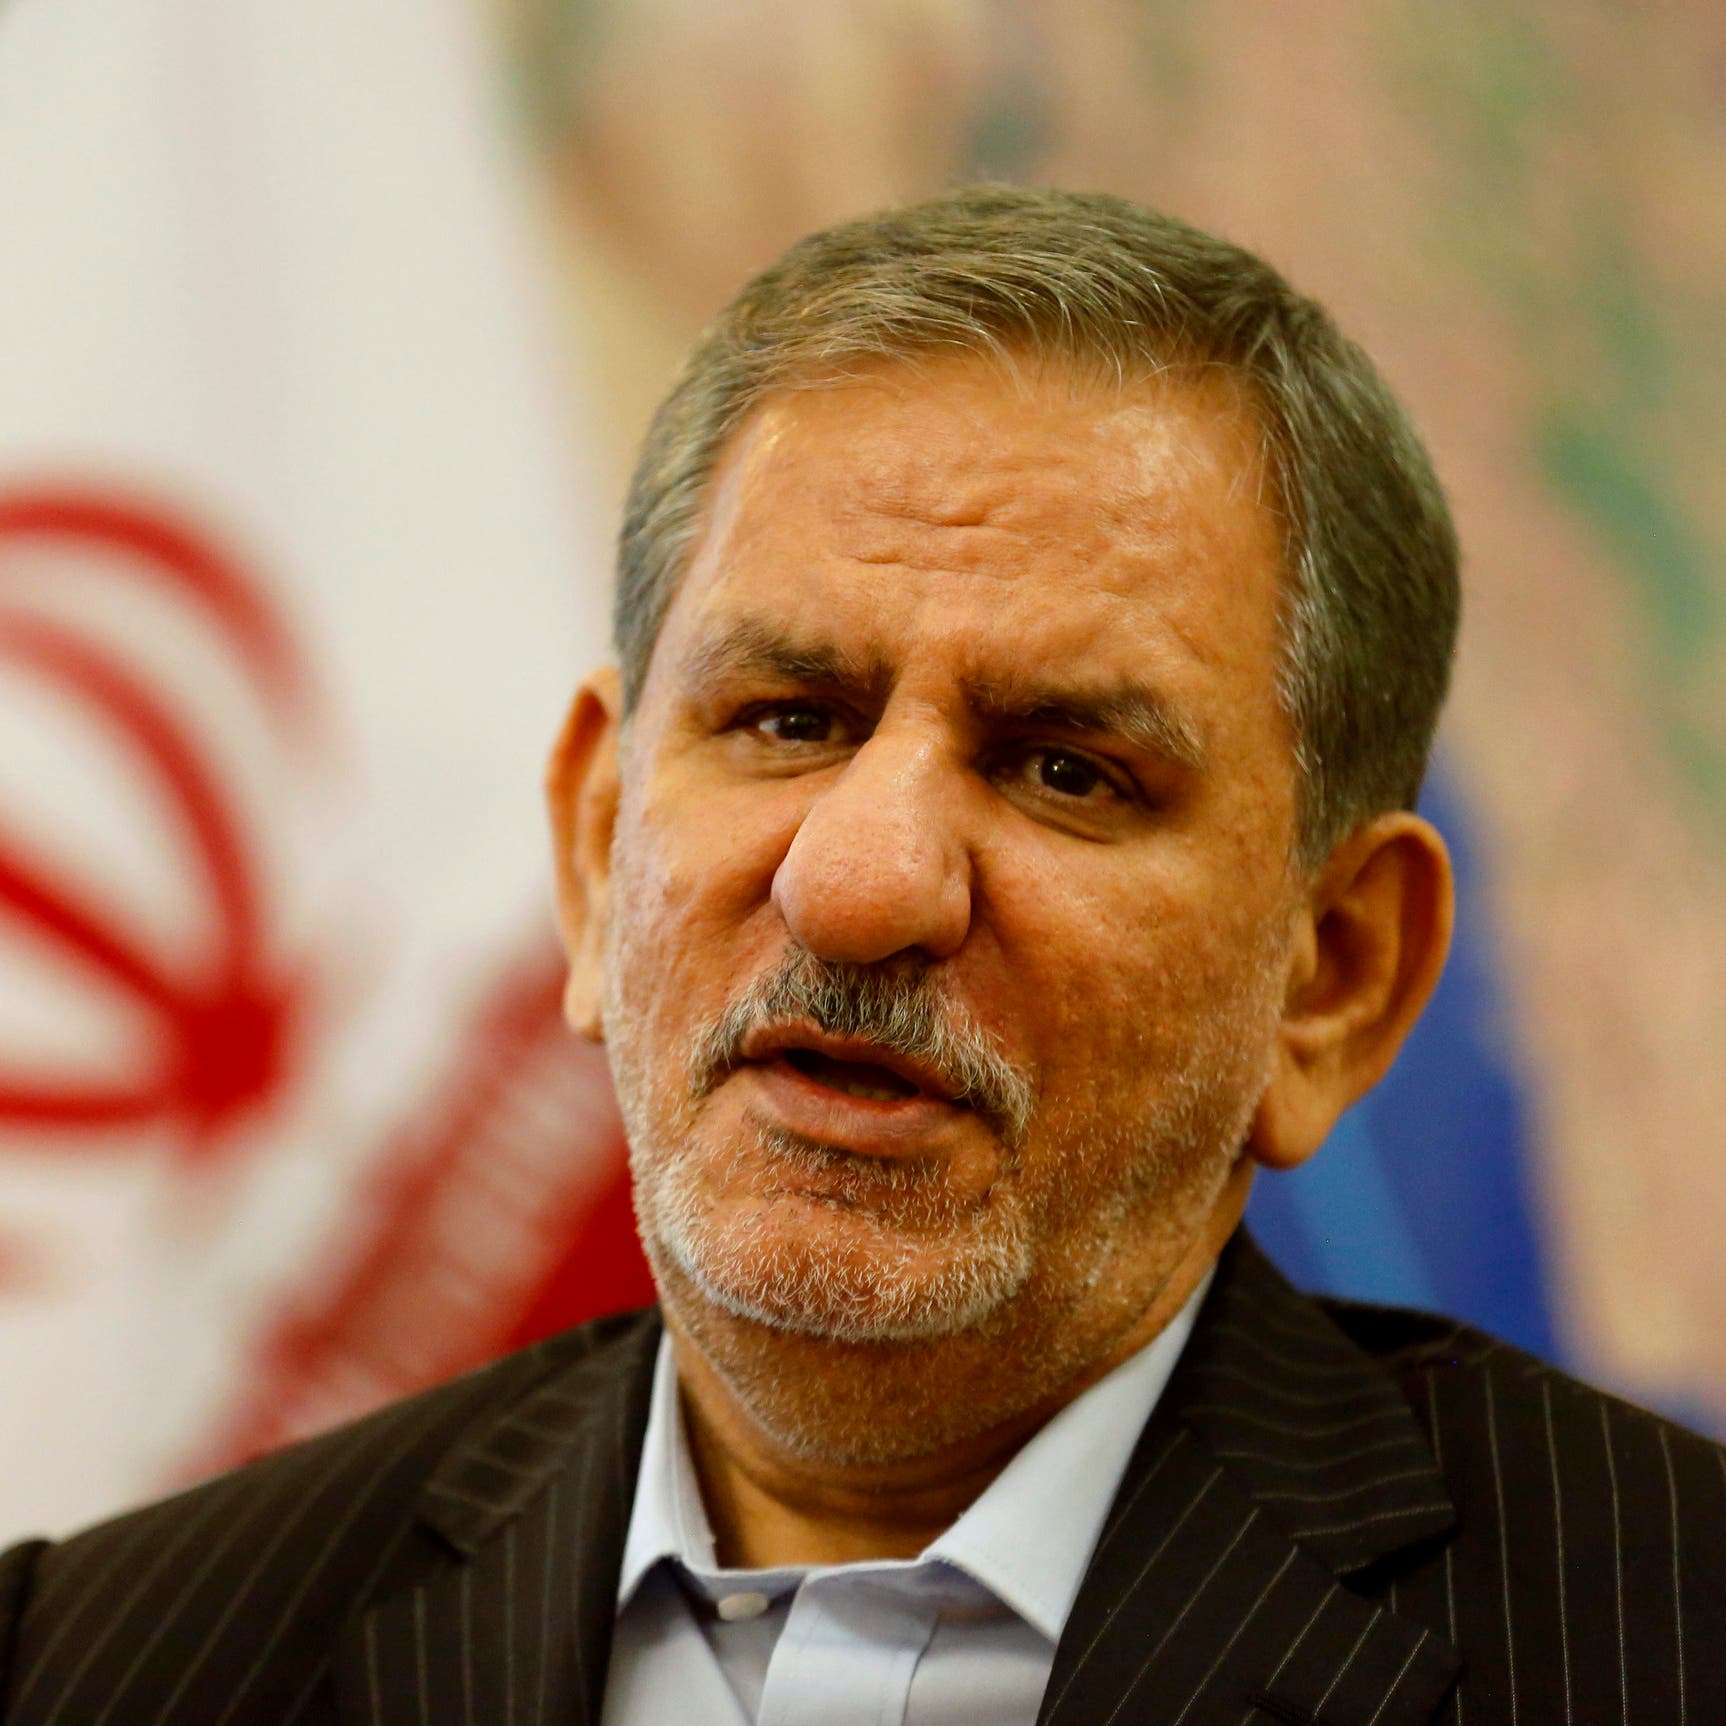 العقوبات تخنق إيران.. "لا يمكننا نقل دولار واحد"